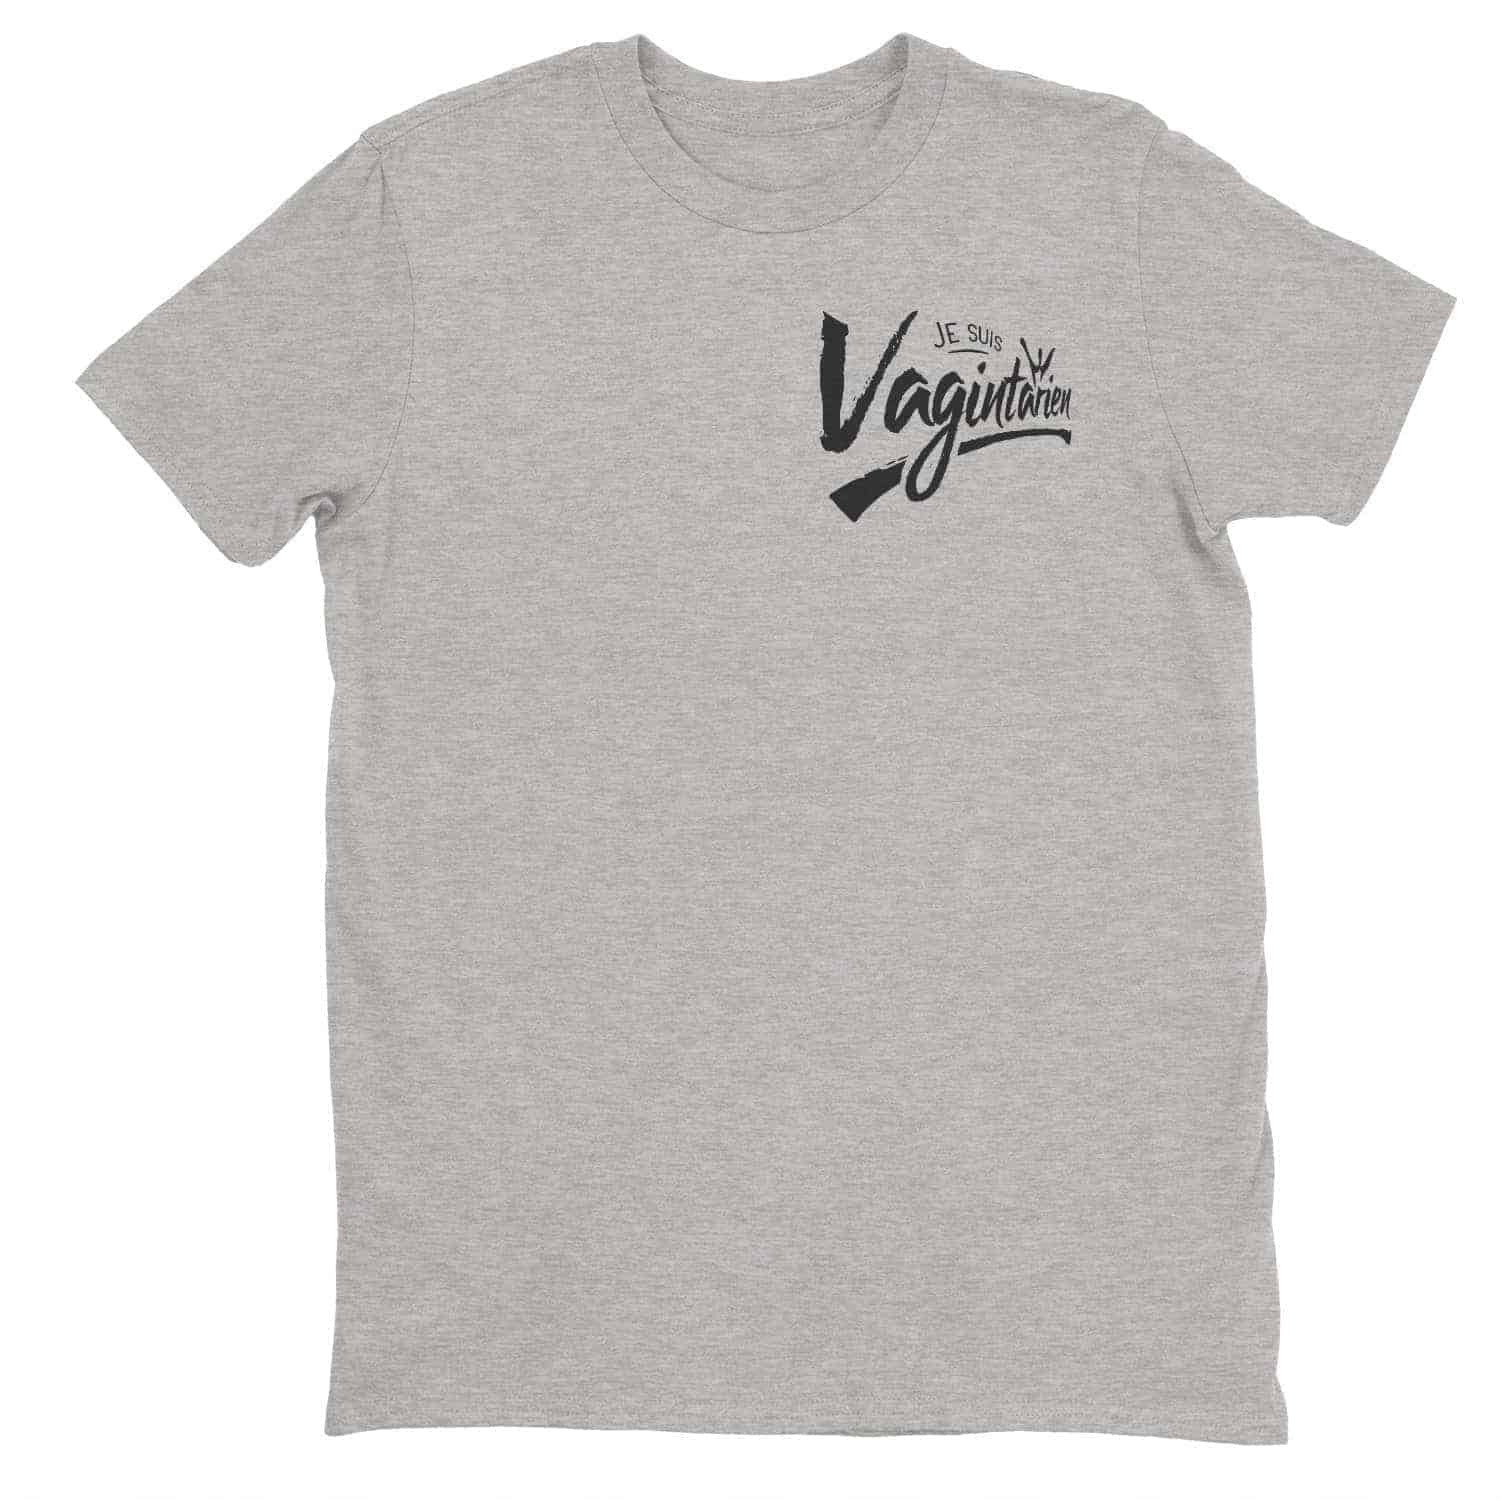 Je suis Vagintarien t-shirt pour homme | t-shirt drôle | t-shirt humoristique 9